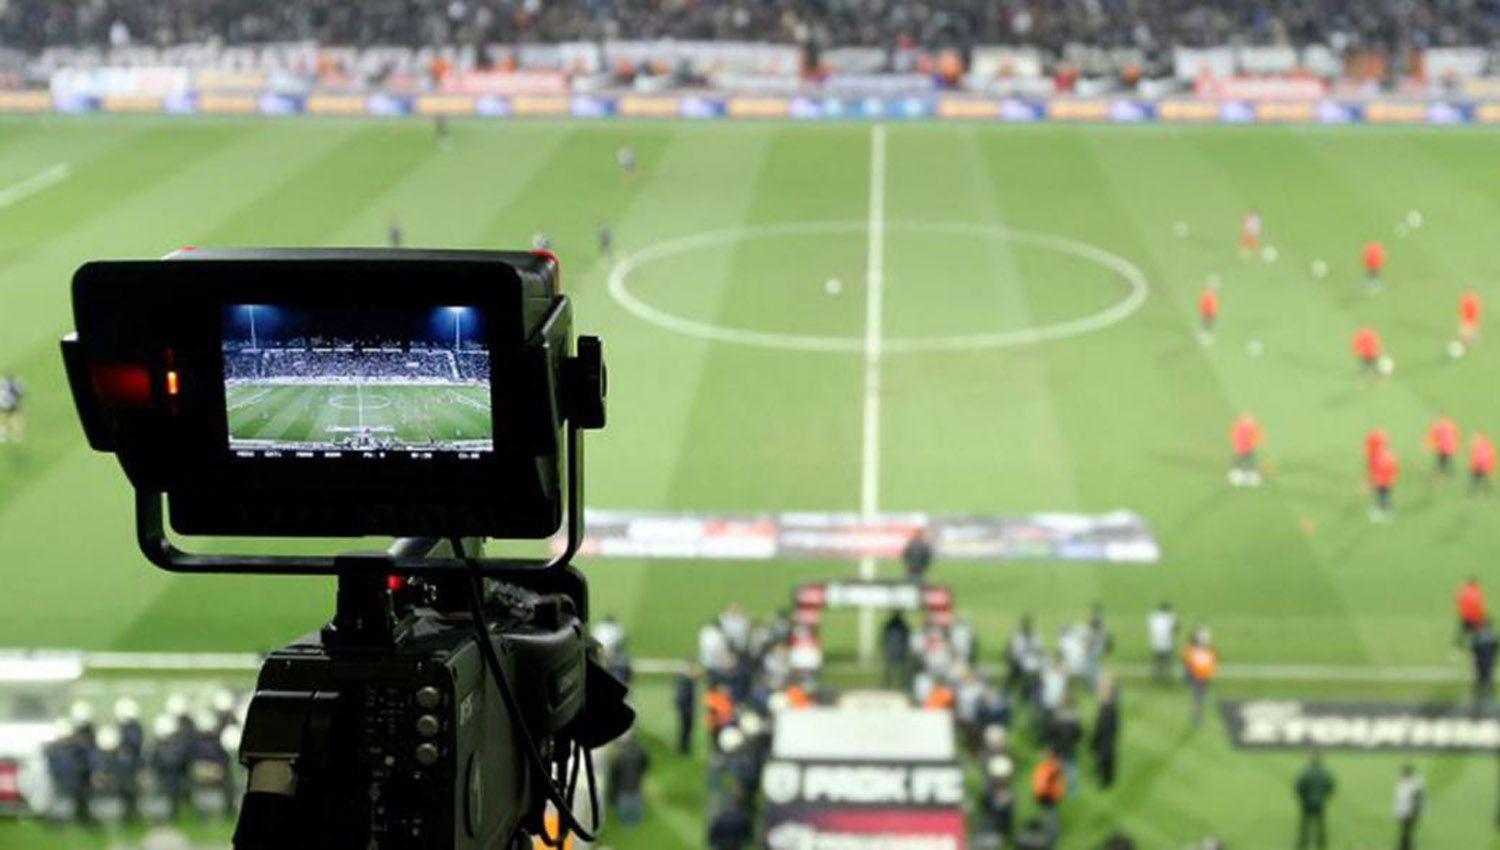 iquestLa TV Puacuteblica transmitiraacute los partidos de la Liga Profesional